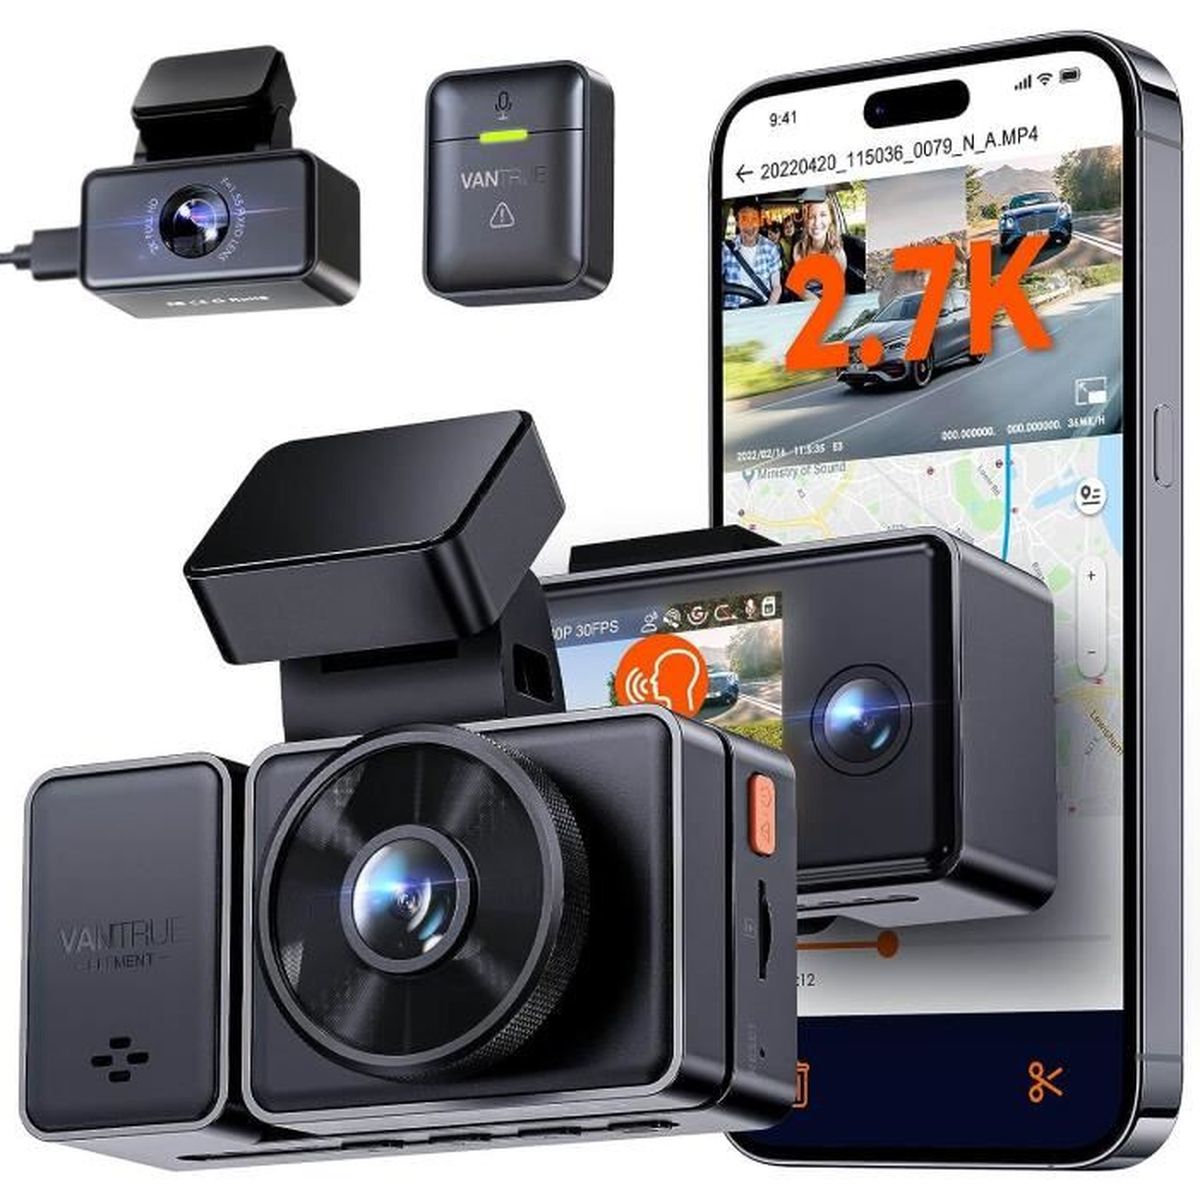 KIT-CAR-2HD - Kit vidéosurveillance anti vandalisme véhicule avec 2 caméra  HD longue autonomie et détection de mouvement